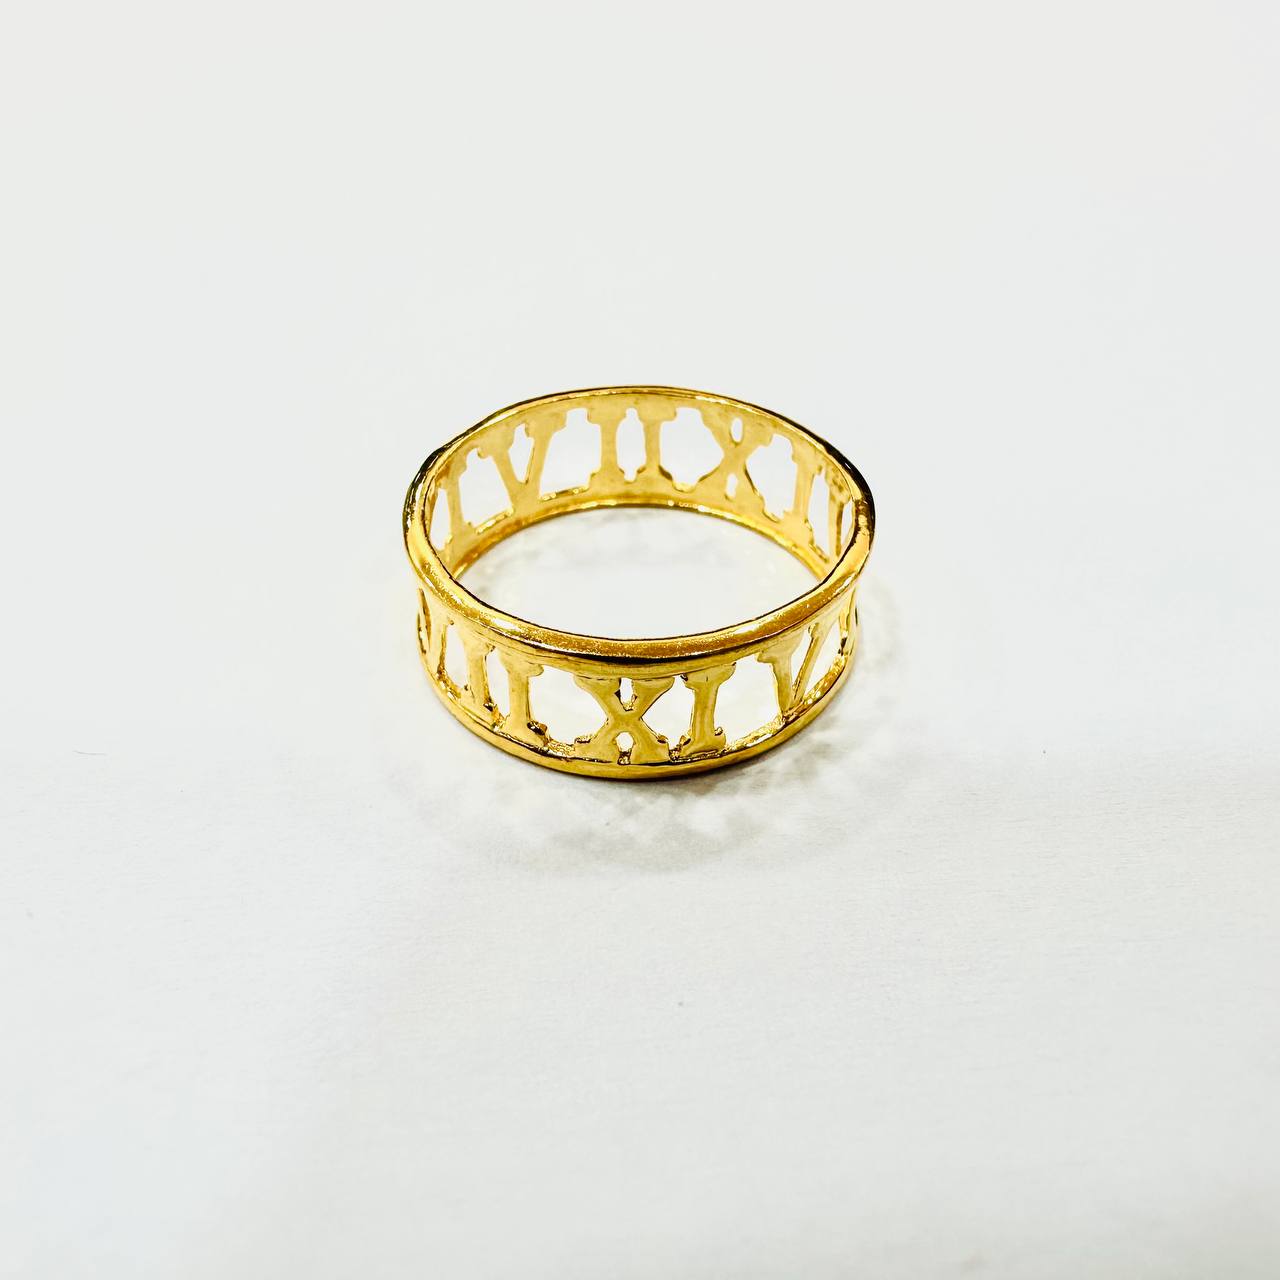 22k / 916 Gold Roman Ring V4-Rings-Best Gold Shop